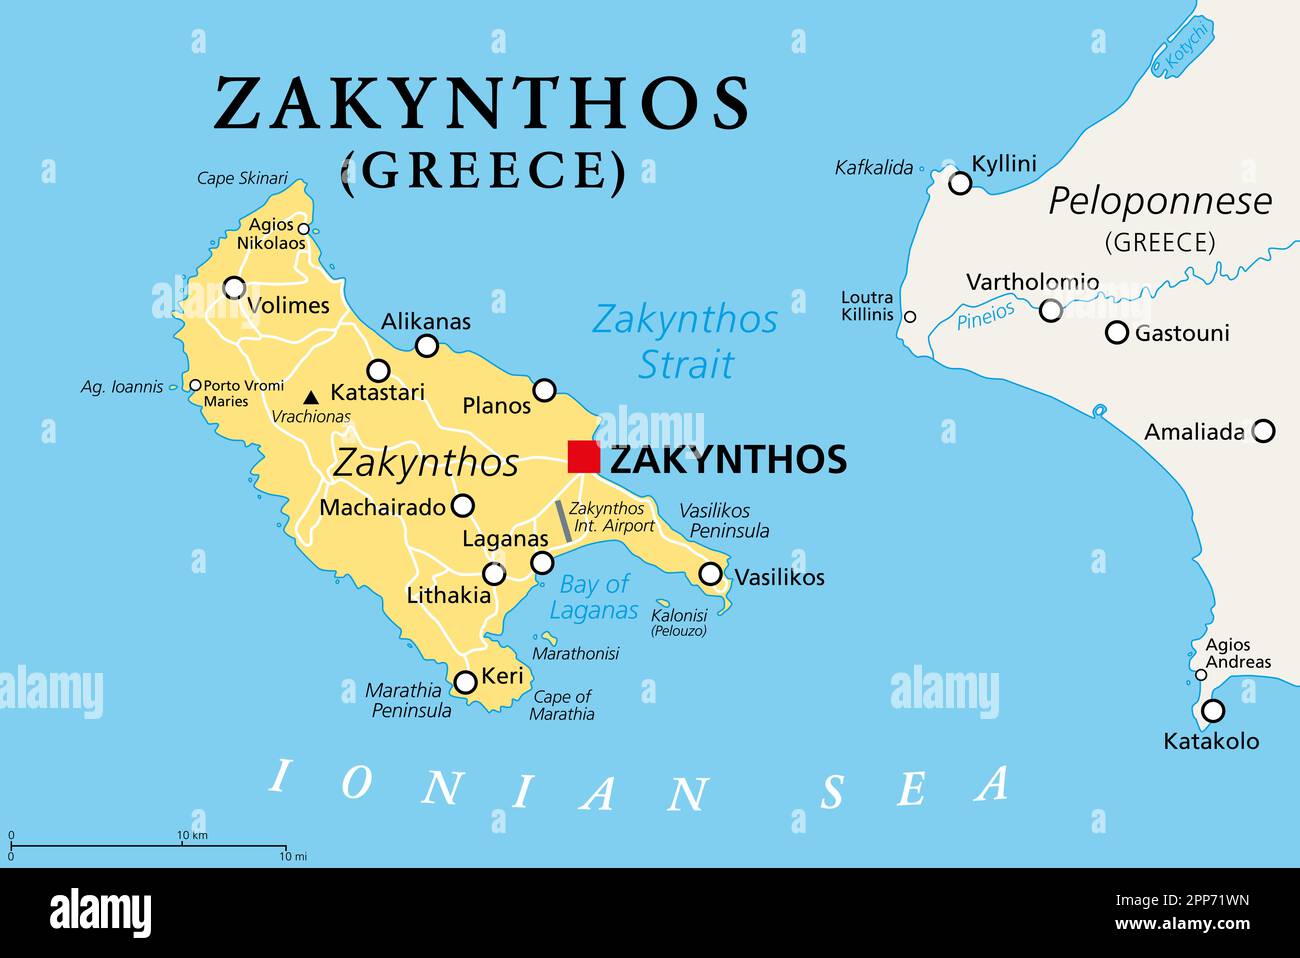 Zakynthos, griechische Insel, politische Karte. Auch bekannt als Zakinthos oder Zante, Teil der Ionischen Inseln in Griechenland, und separate regionale Einheit. Stockfoto